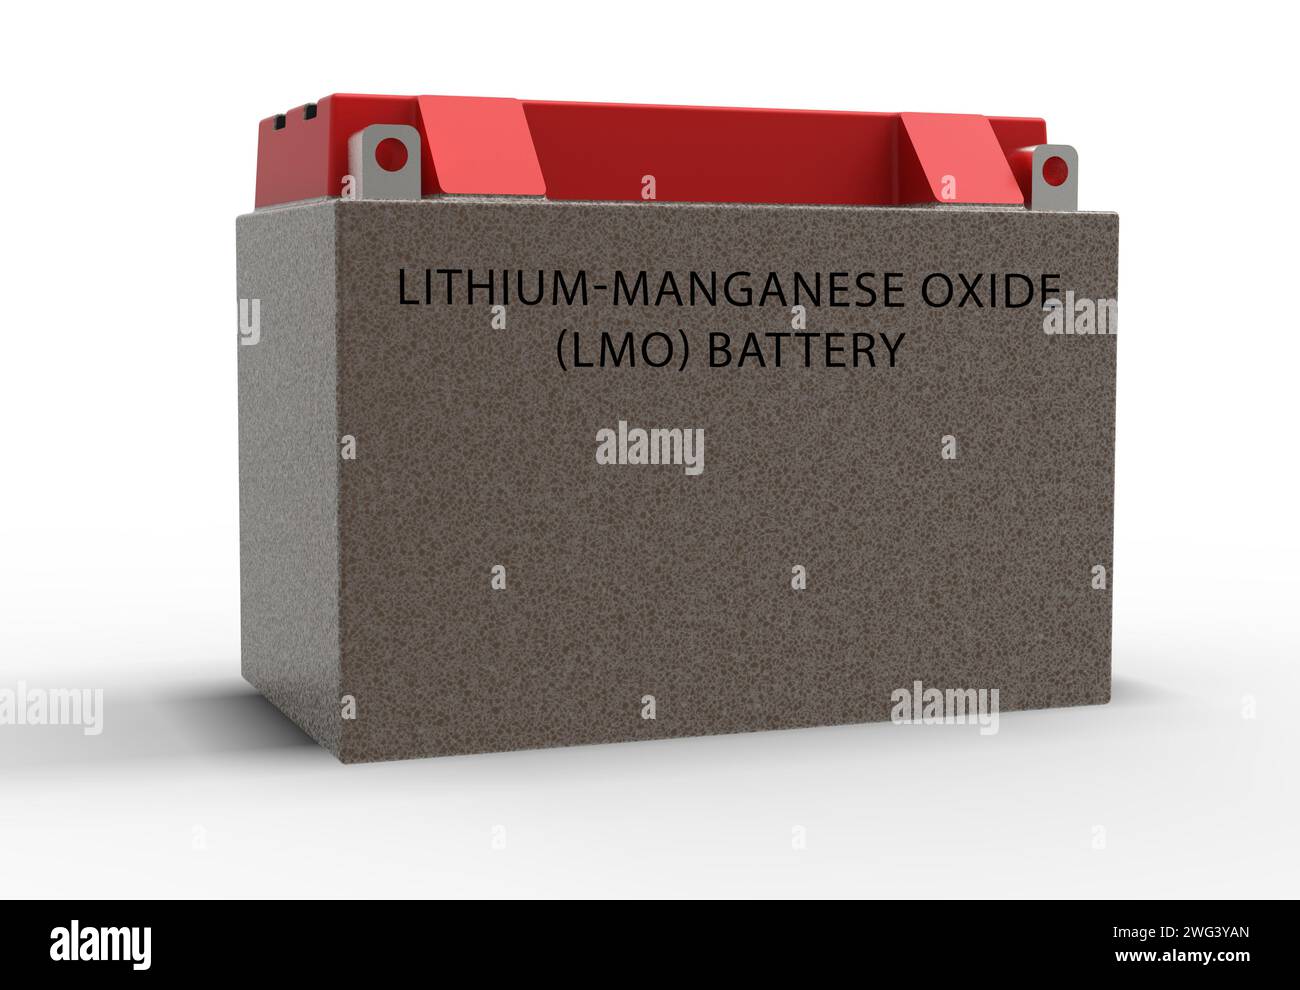 Lithium-manganese oxide battery Stock Photo